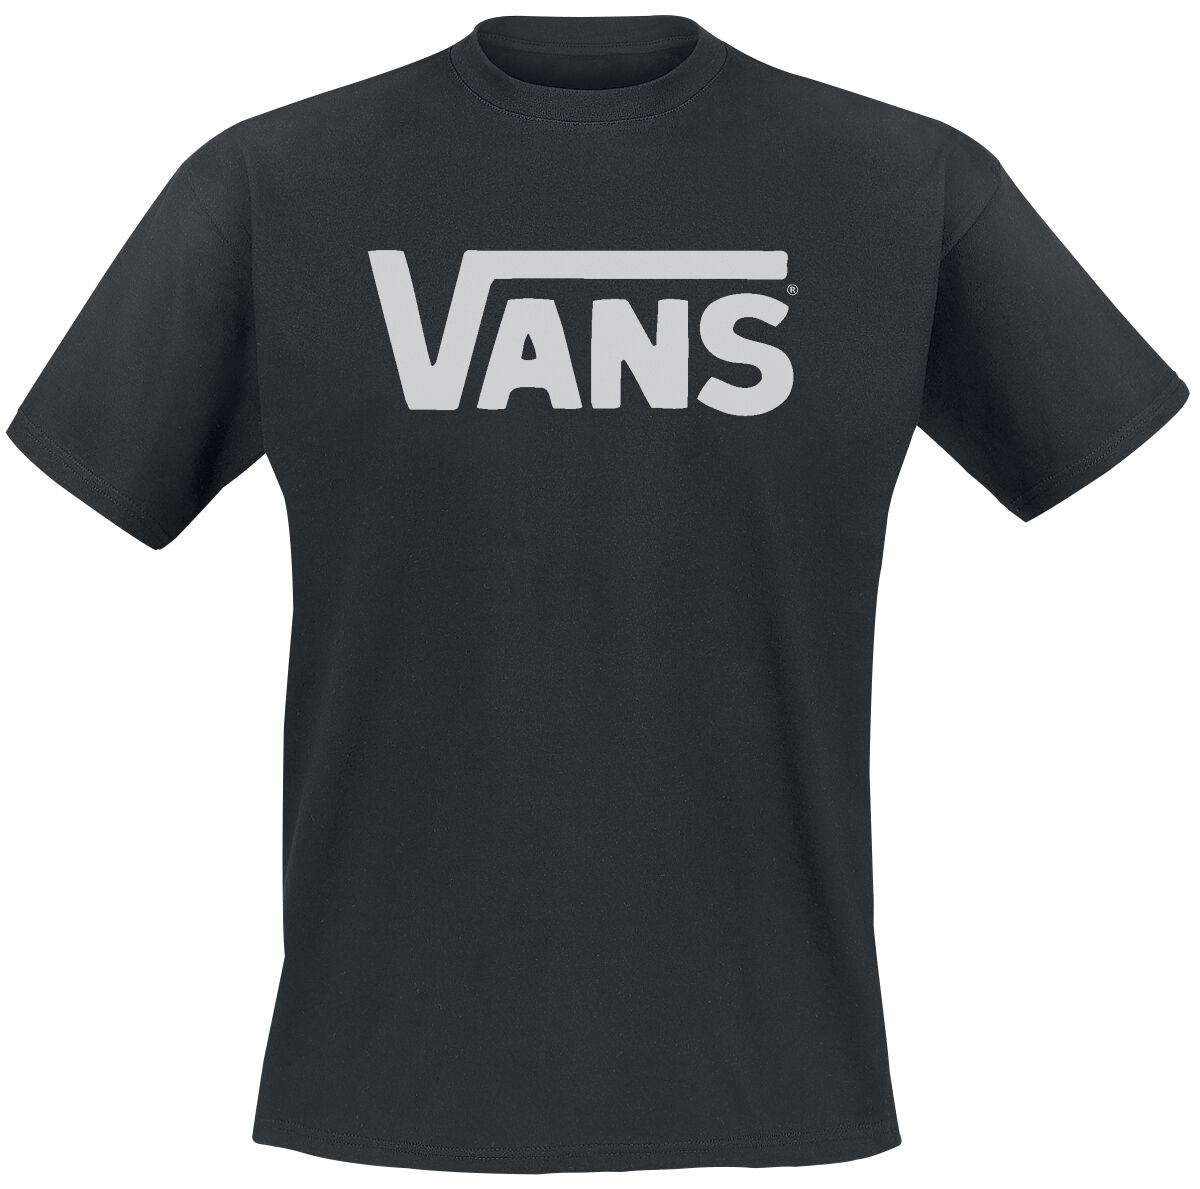 Vans T-Shirt - Classic - S bis L - für Männer - Größe M - schwarz/weiß